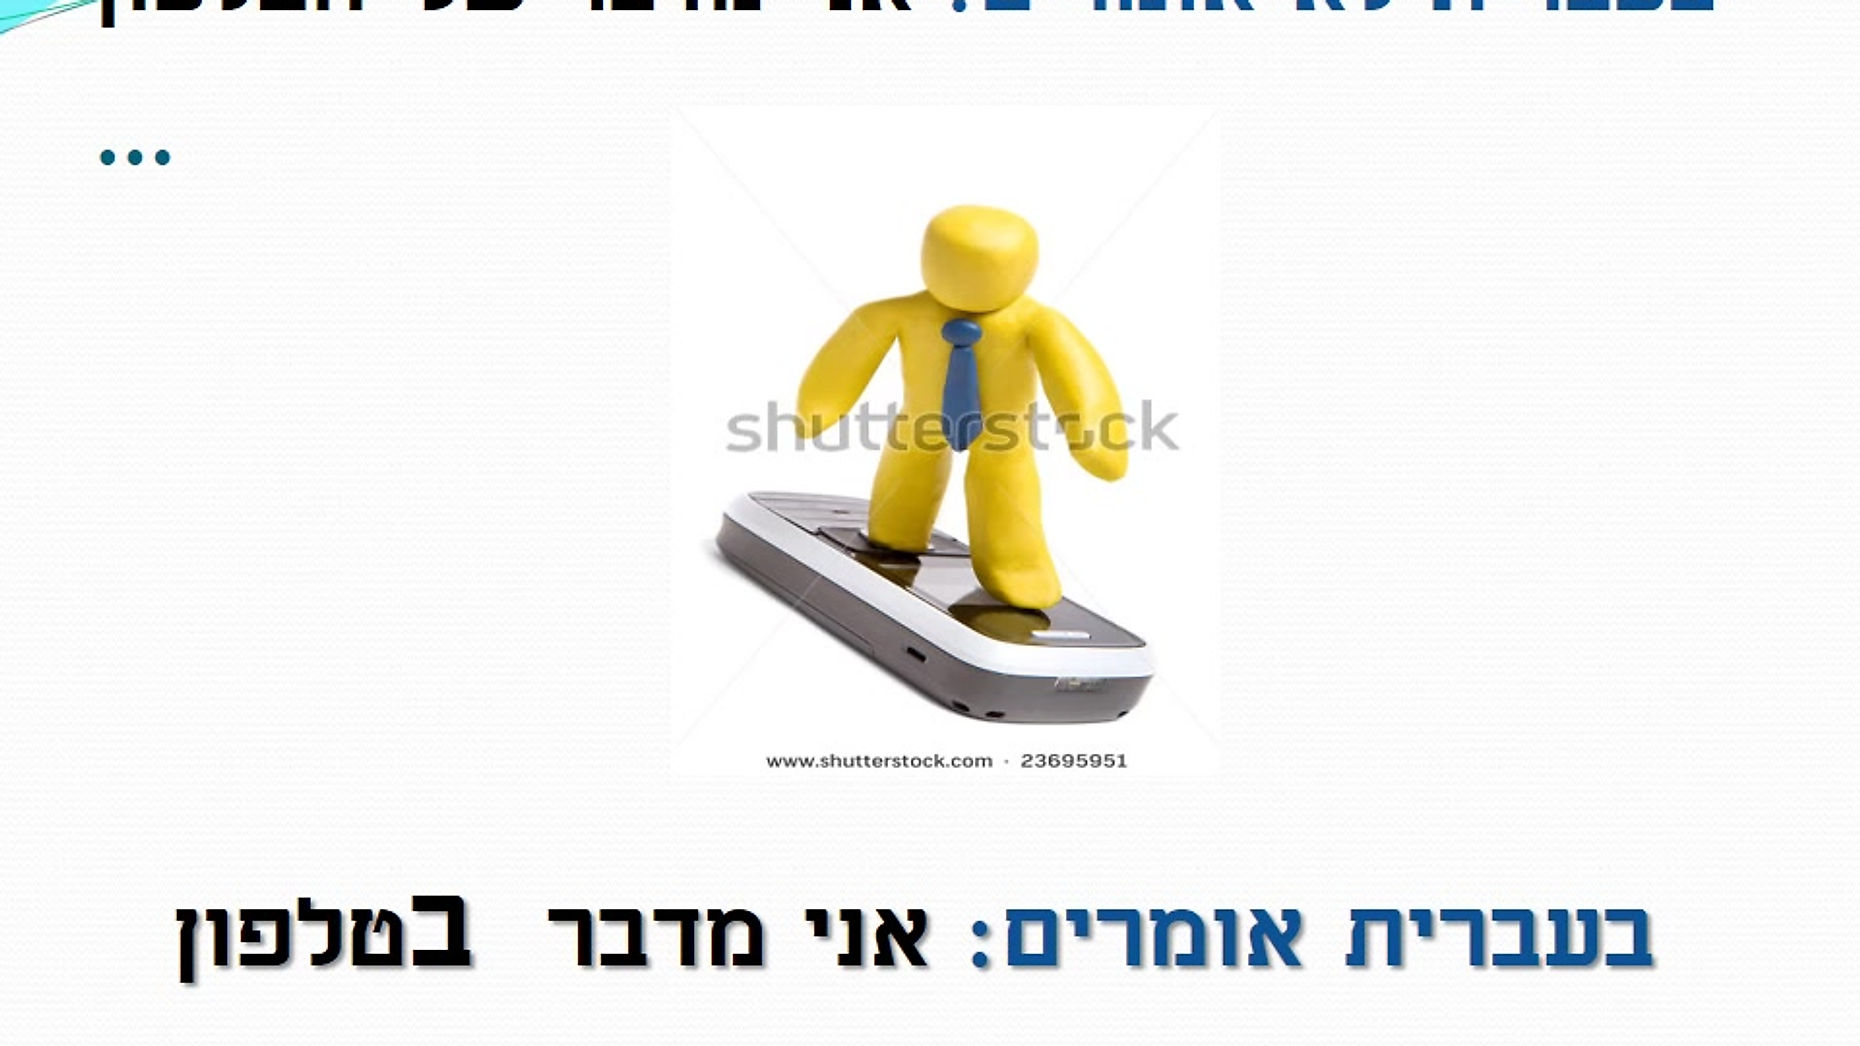 Shalom 1 - Unit 5